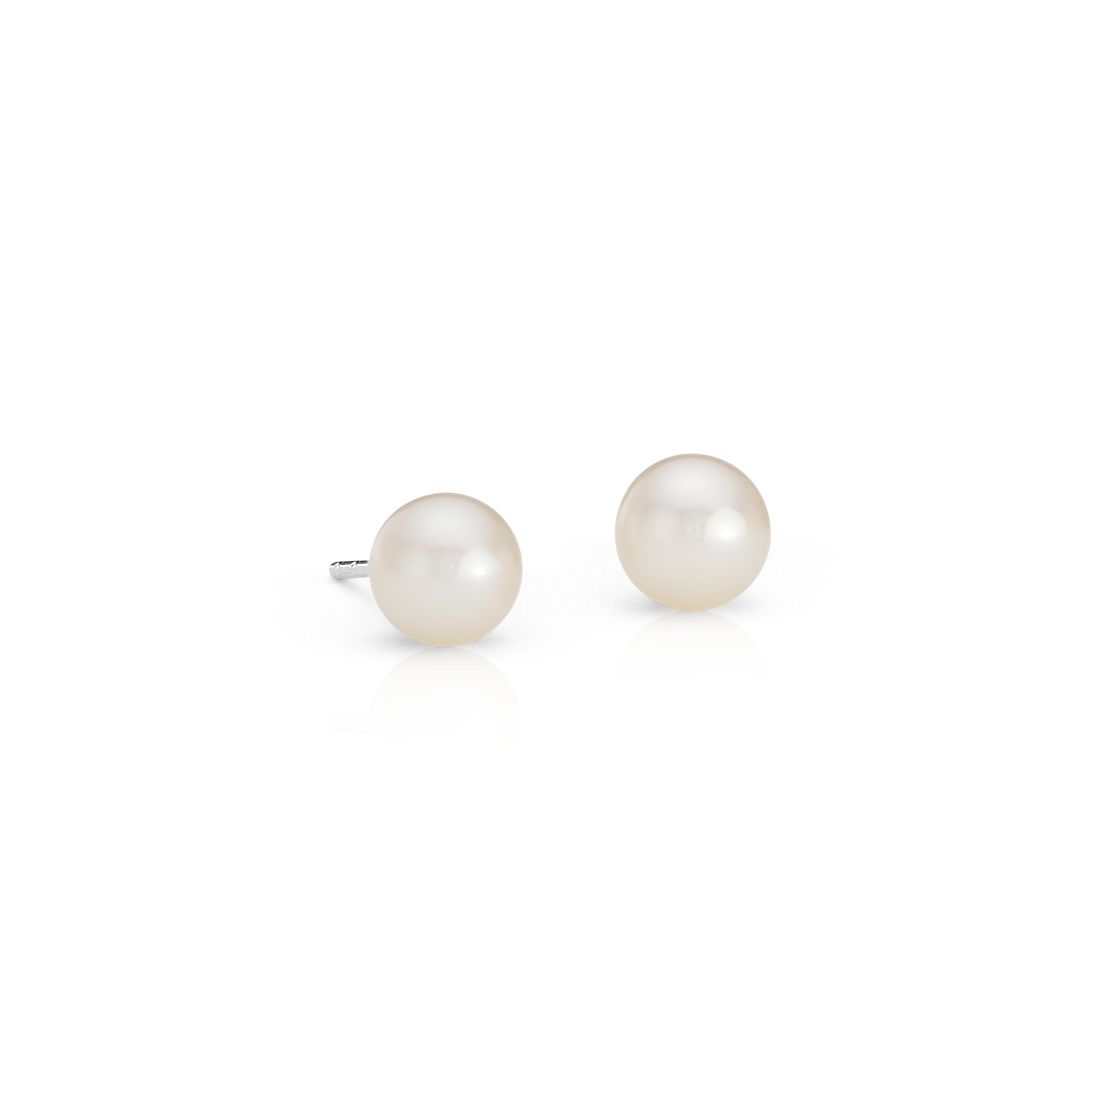 White Pearl Studs Sterling Silver Bridesmaid Earrings Pearl Stud Earrings June Birthstone Freshwater Pearl Silver and Pearl Earrings